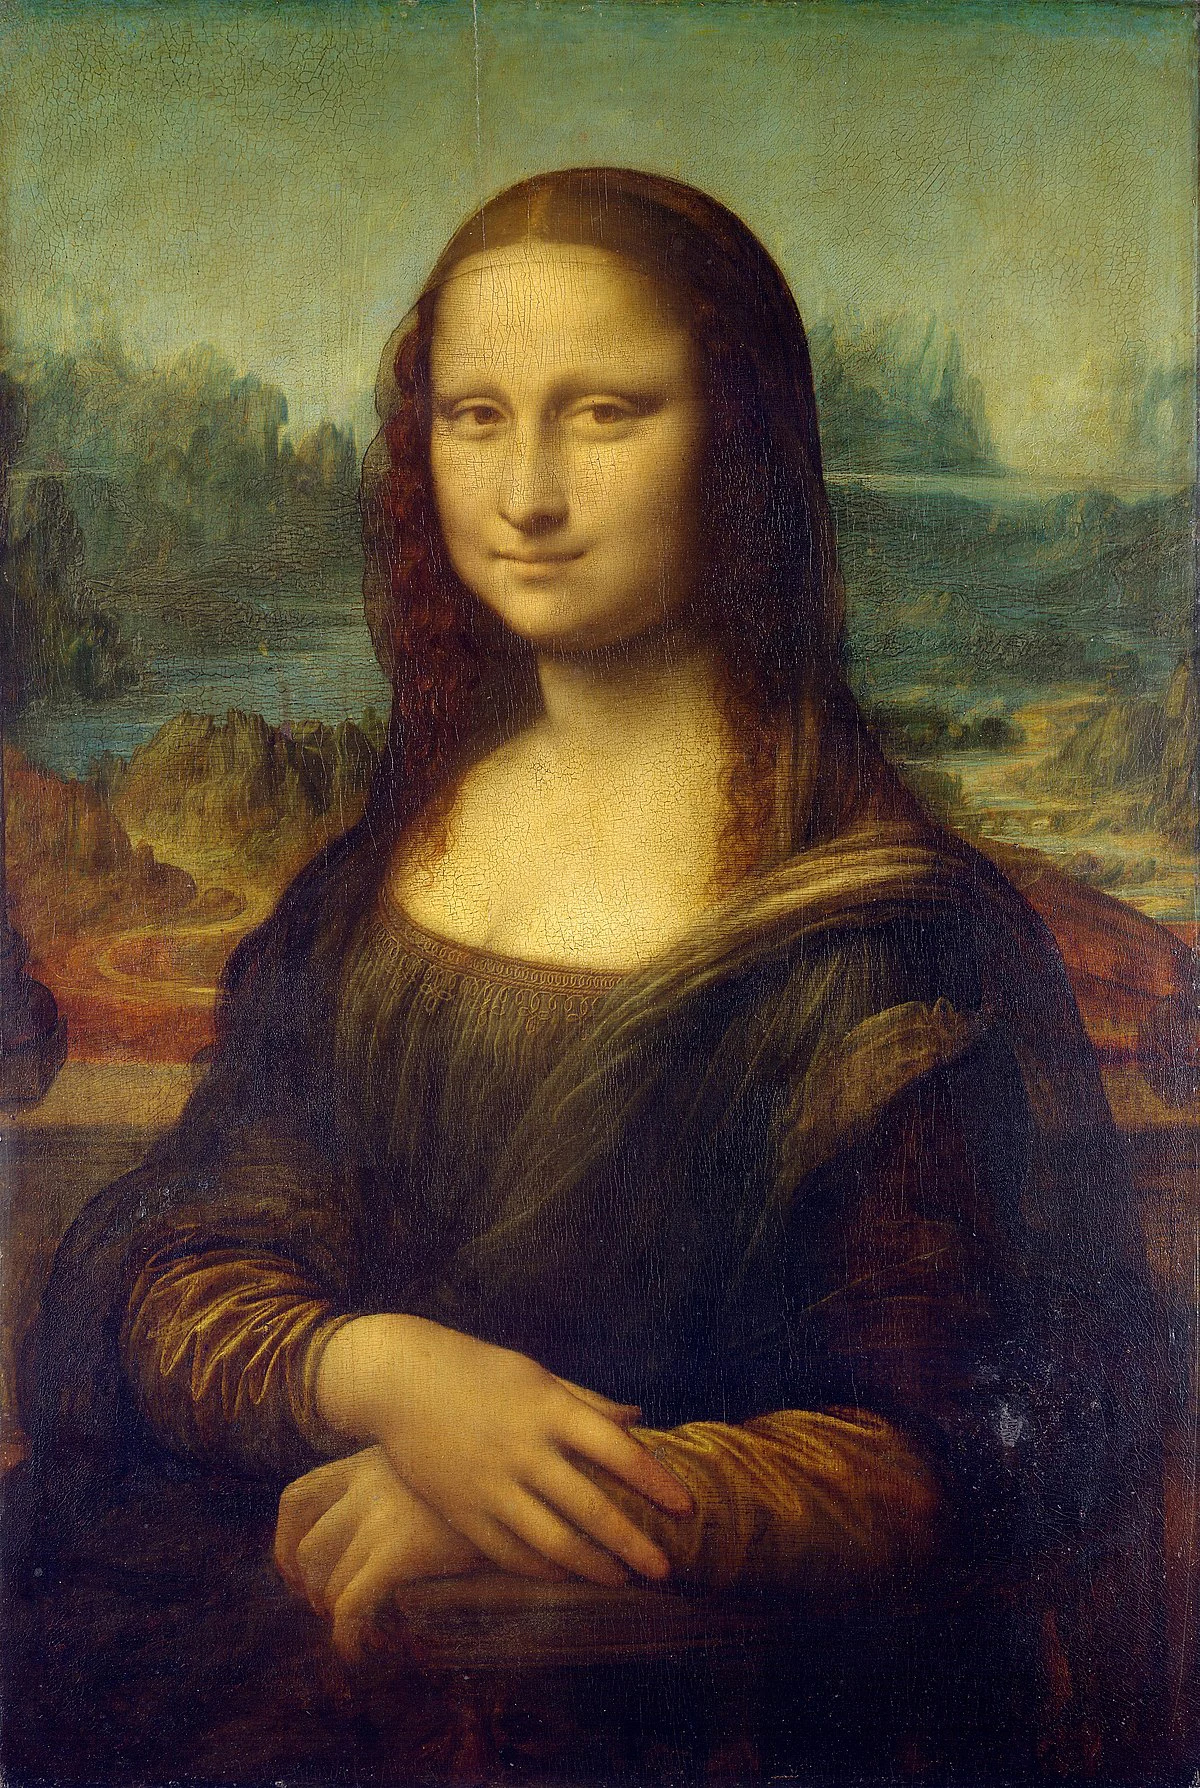 Khám phá một chất độc kỳ bí trong bức tranh vẽ nàng Mona Lisa sau hơn 500 năm